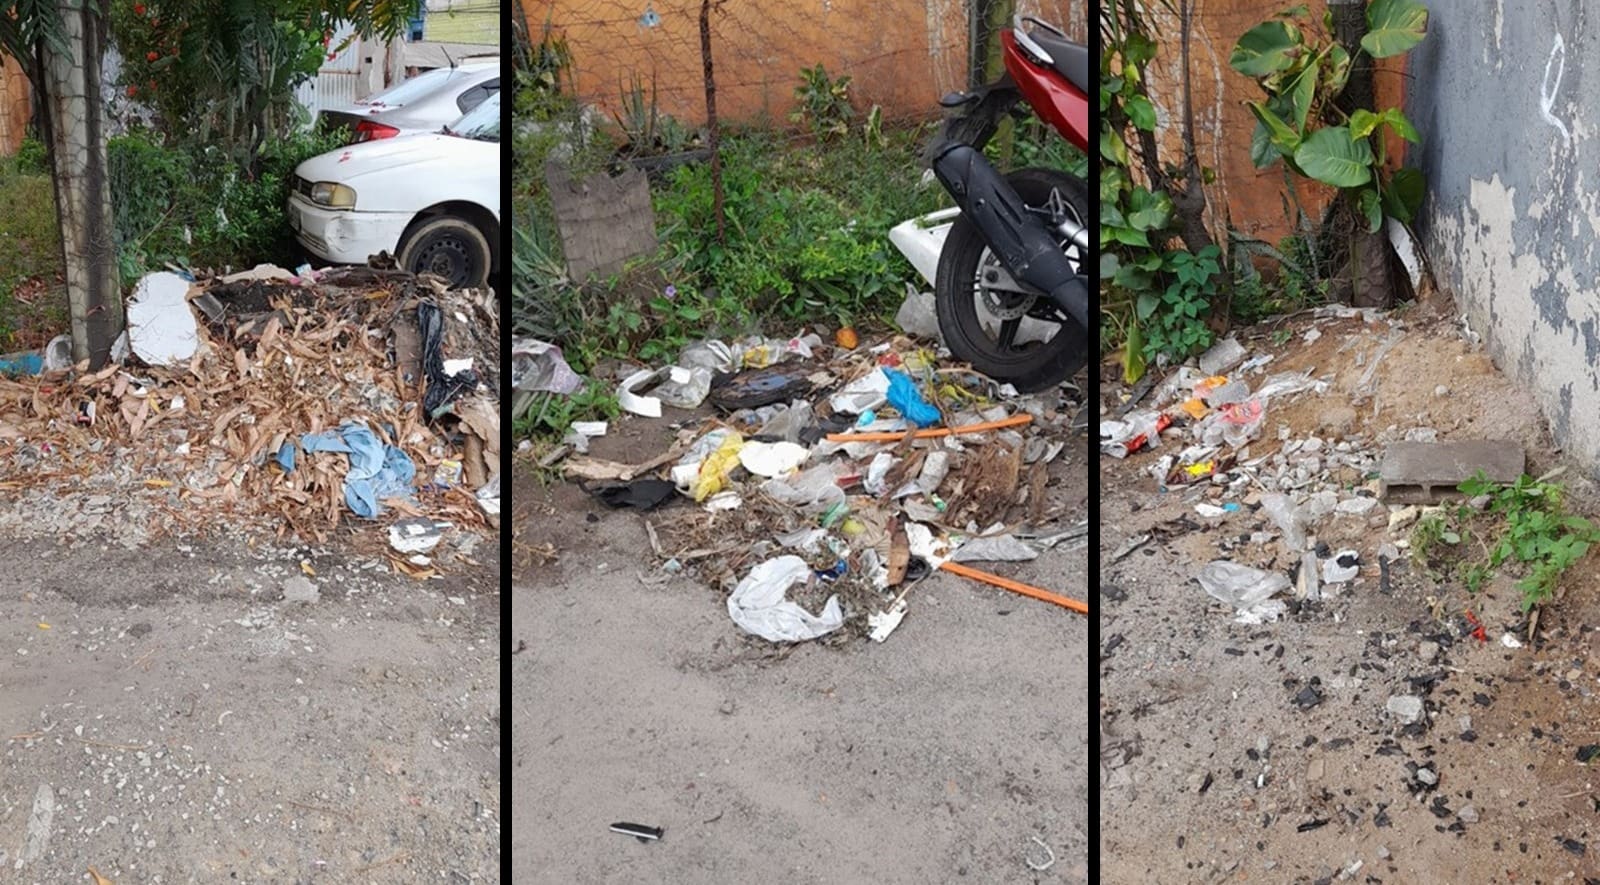 Imagens do lixo acumulado no bairro São Geraldo